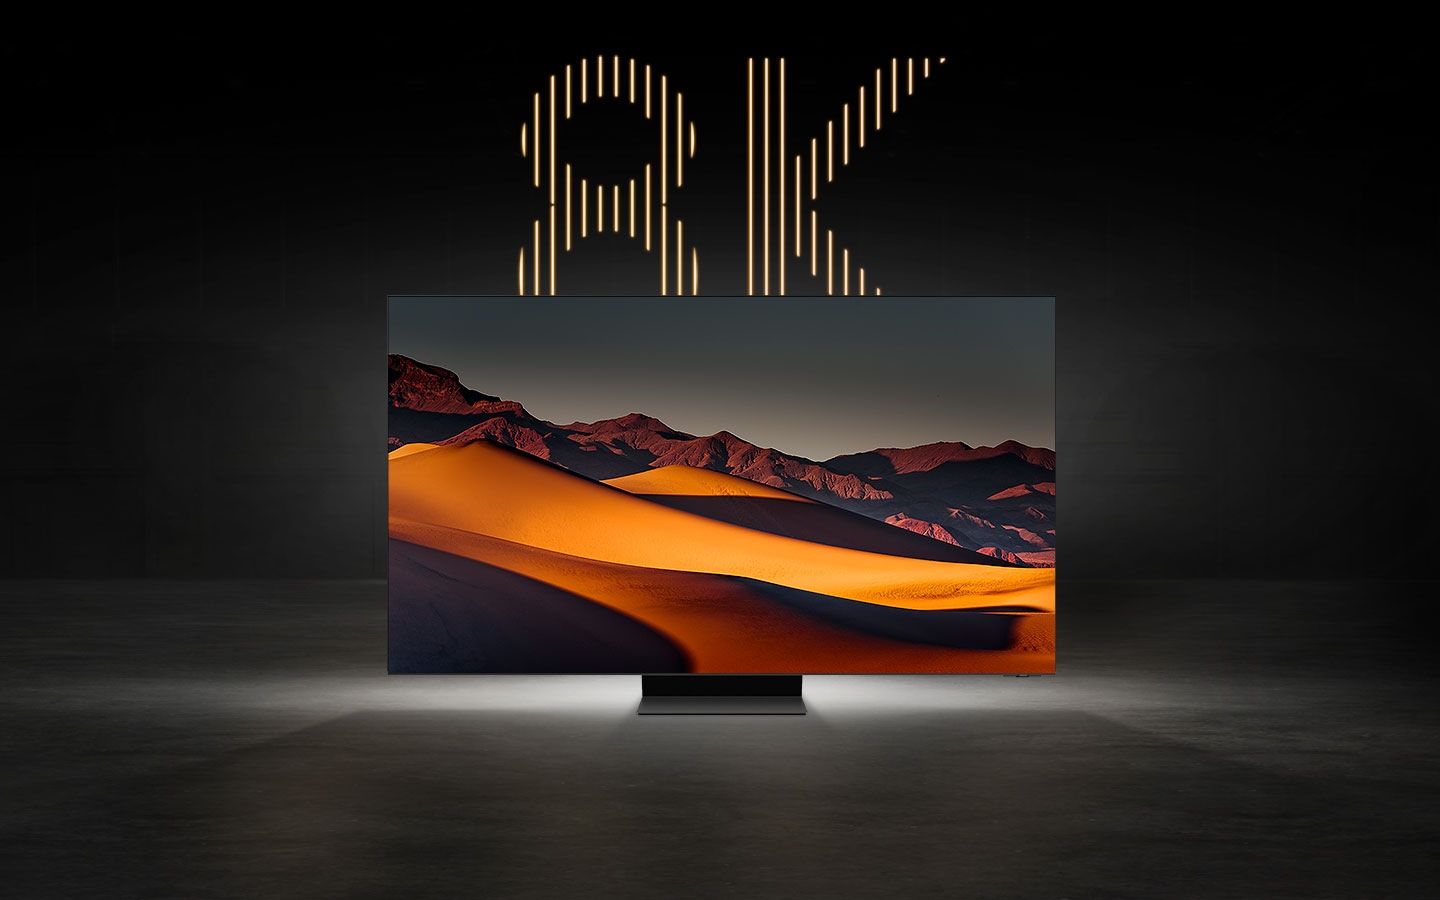 Ein 8K-Fernseher, der ein beeindruckendes Bild einer bergigen Wüste zeigt, mit dem Text "8K" prominent hinter dem Fernseher.